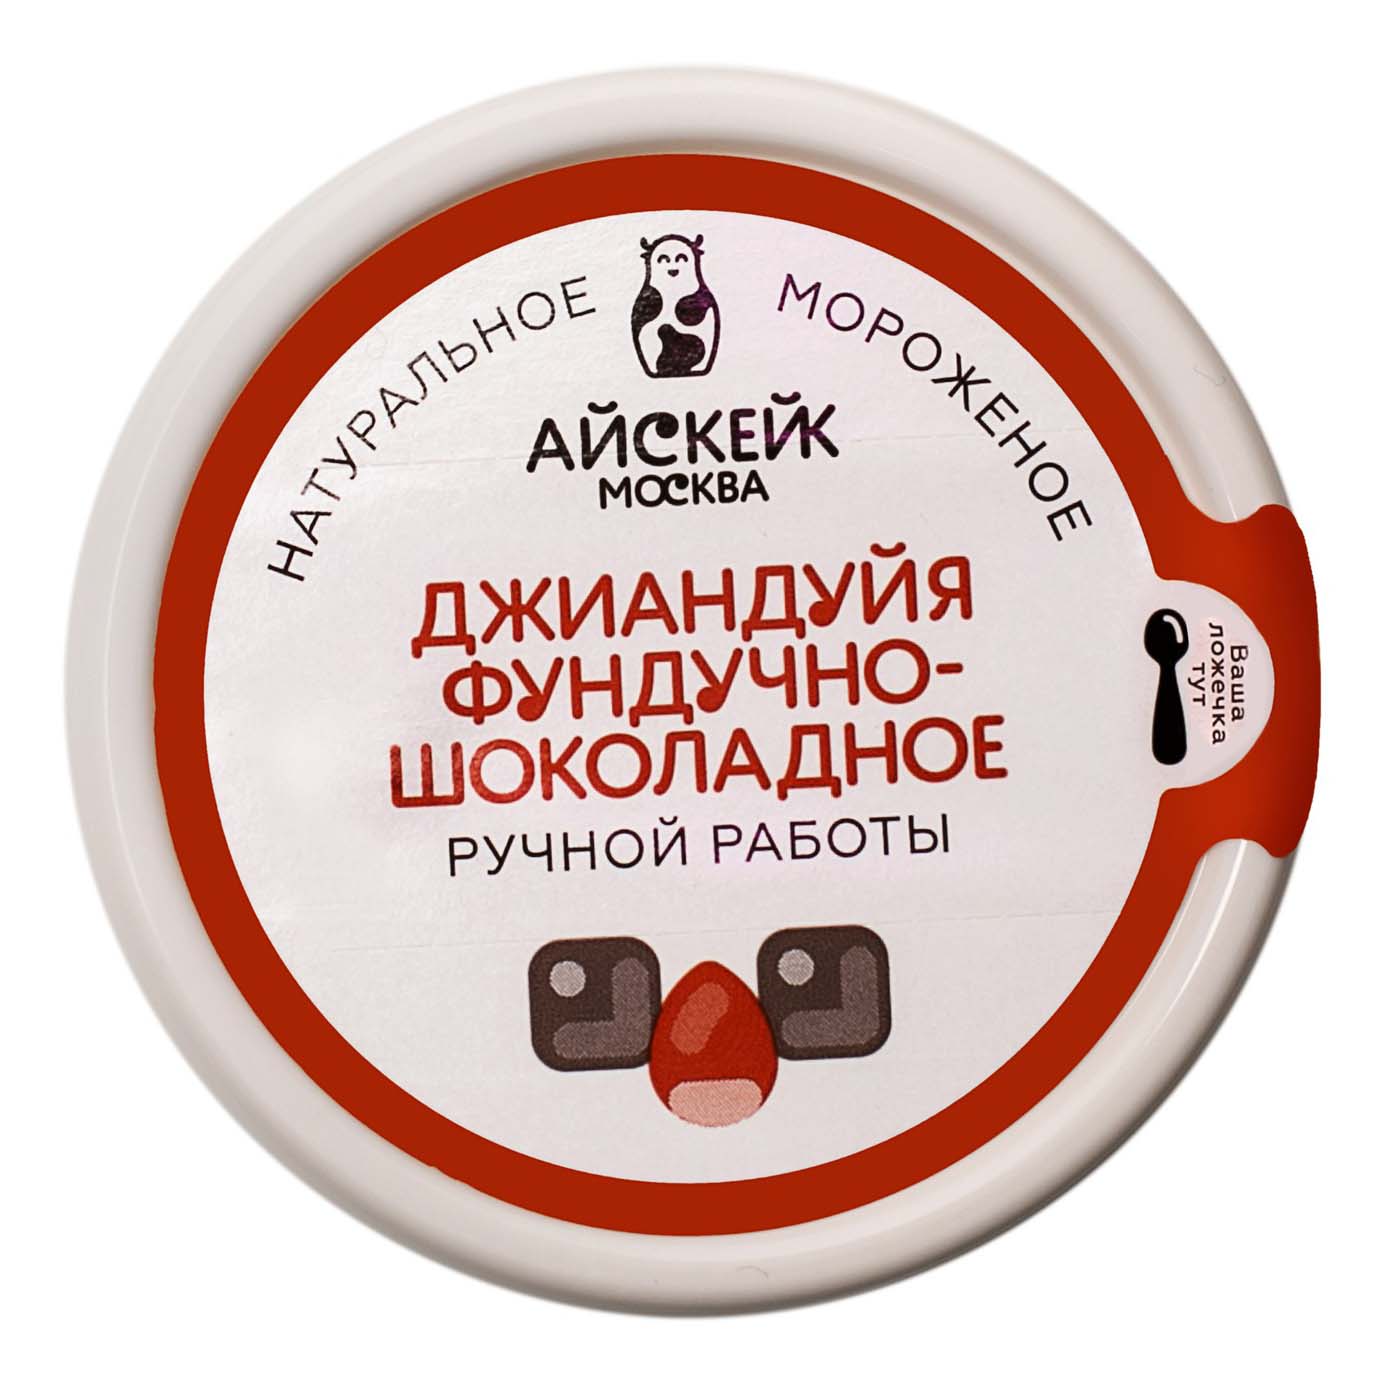 Мороженое сливочное Айскейк Москва Джиандуйя с фундучно-шоколадным вкусом 8% 75 г